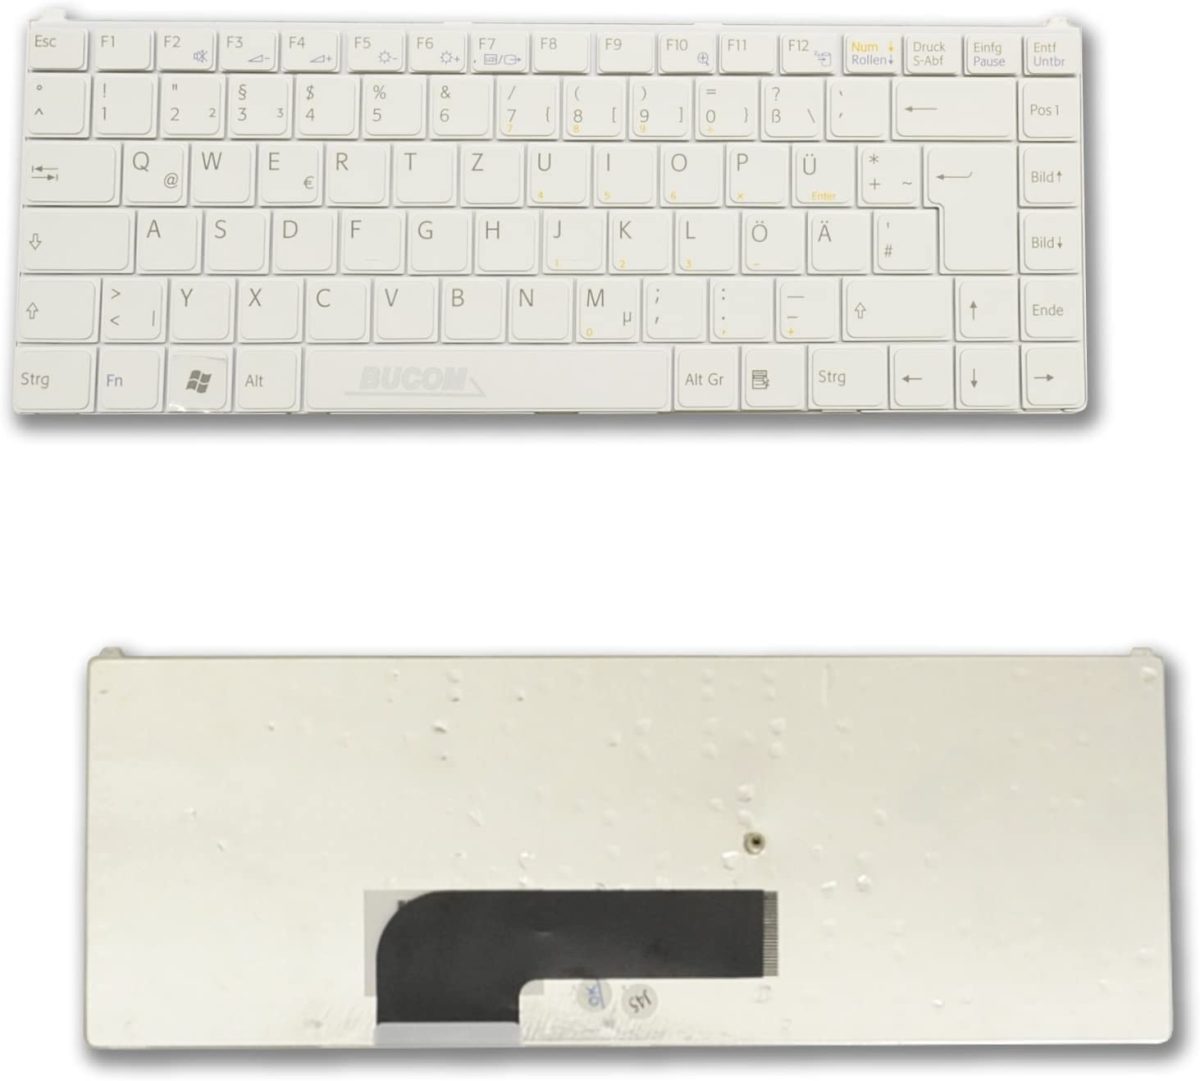 Sony Vaio VGN-N250 VGN-N320 VGN-N365 Pcg Series Keyboard